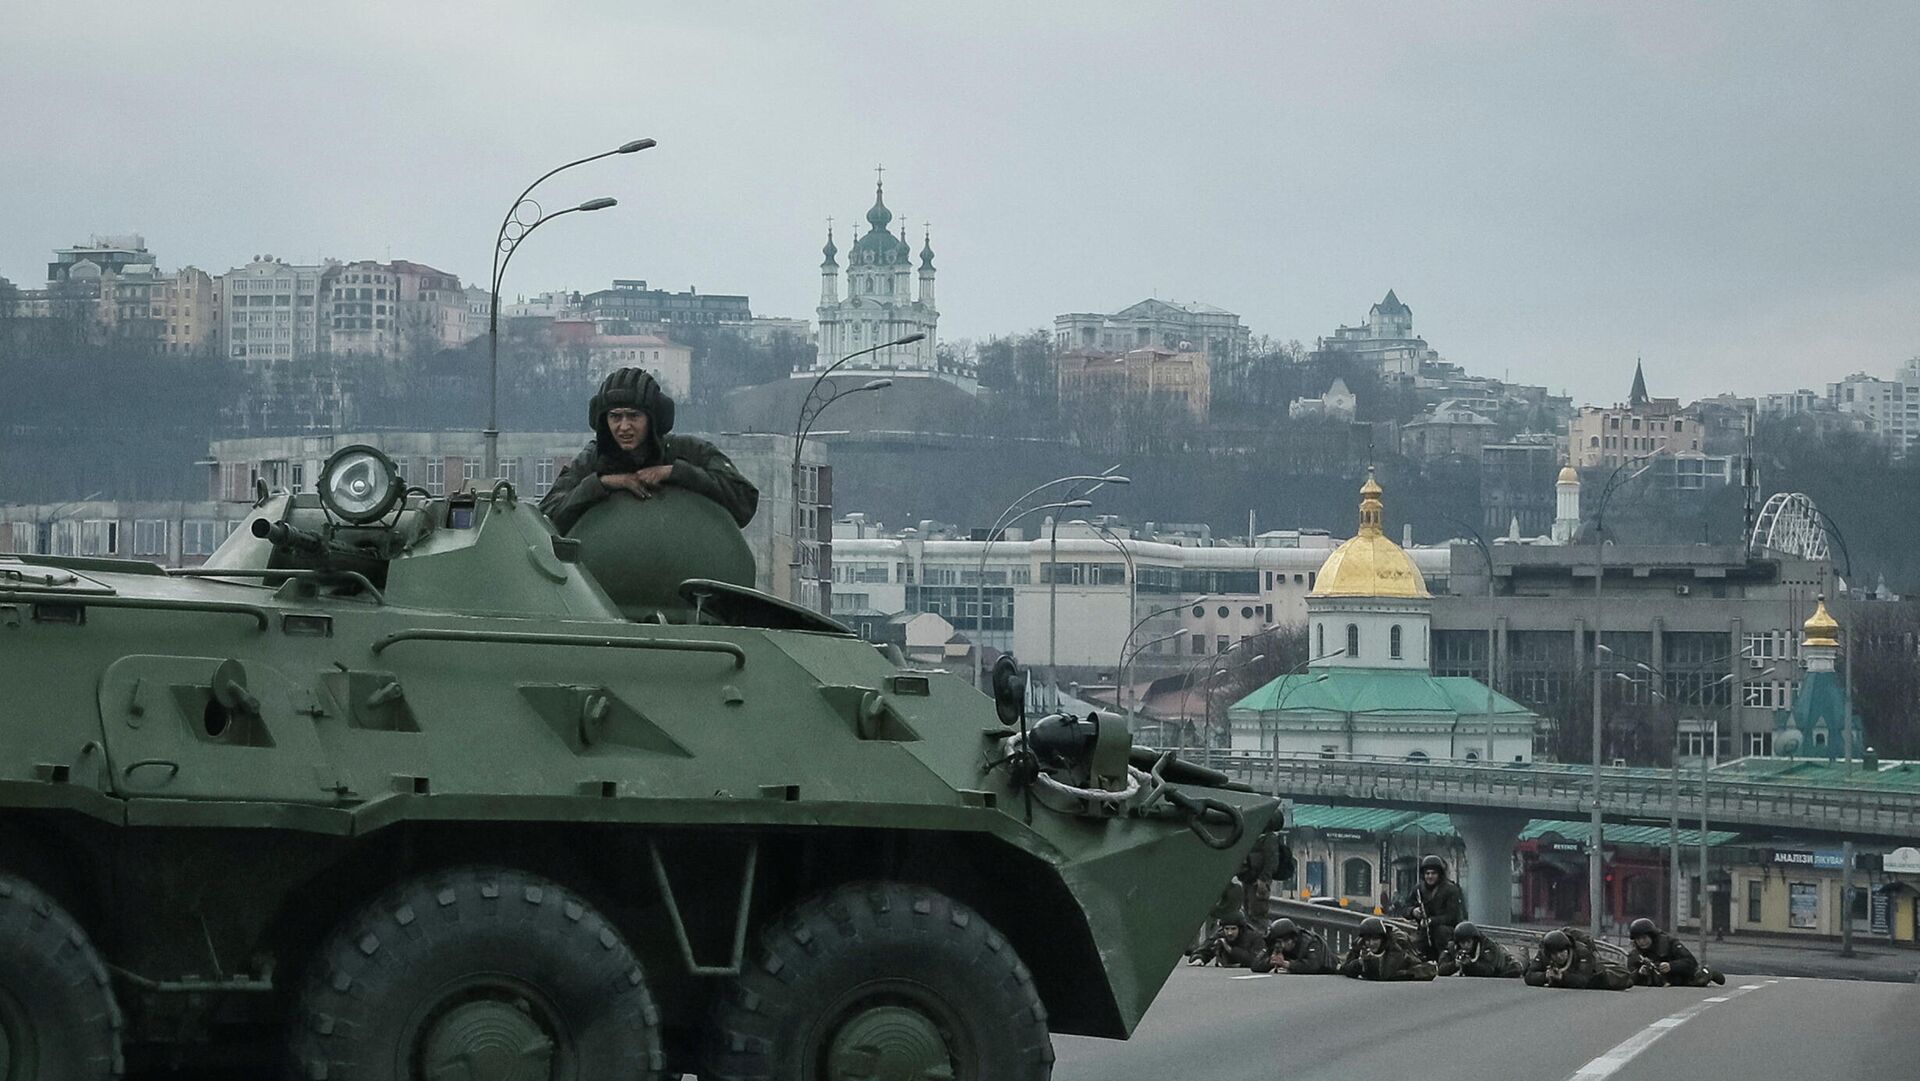 Украинские военнослужащие на мосту в Киеве, 25 февраля 2022 года - Sputnik Латвия, 1920, 28.02.2022